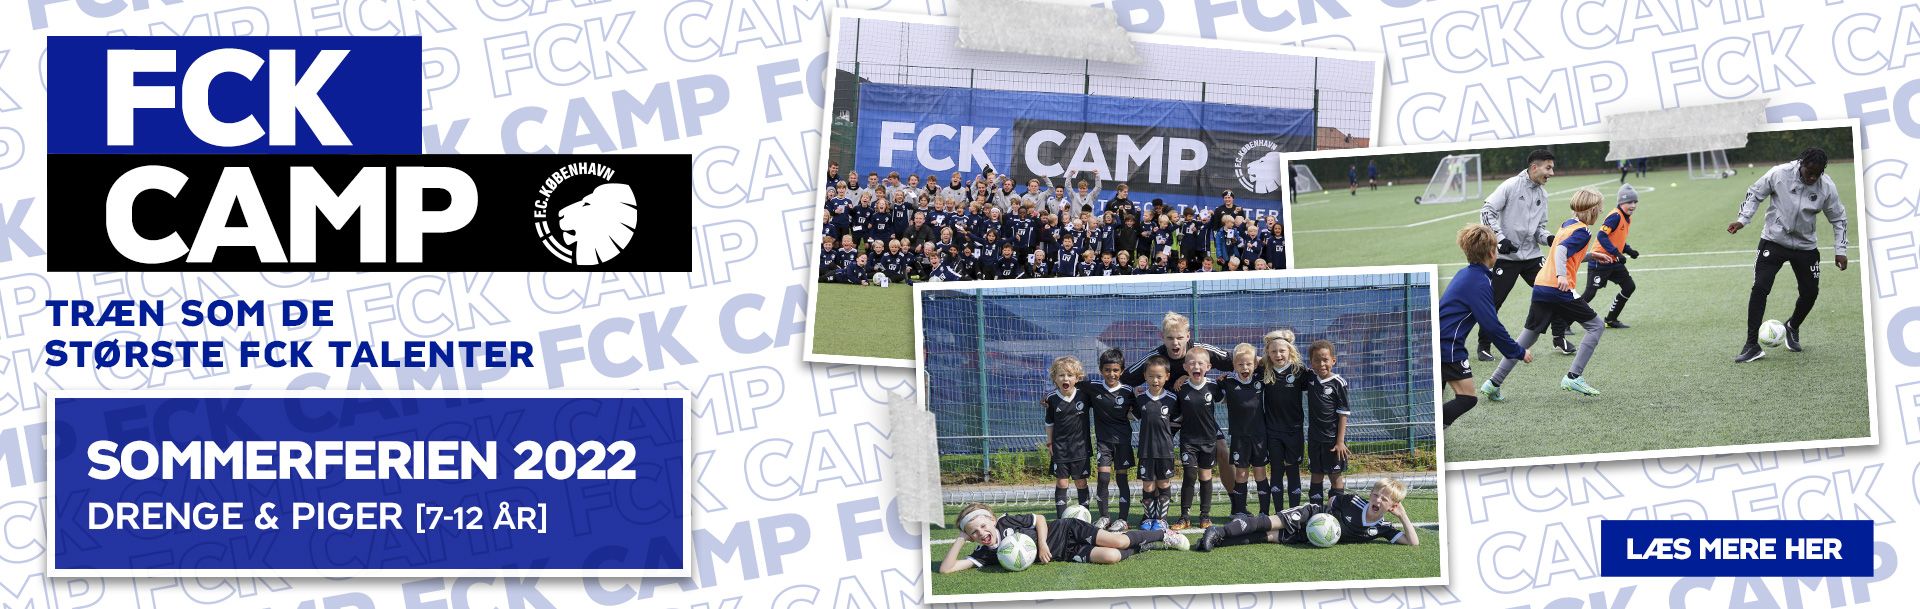 FCK CAMP